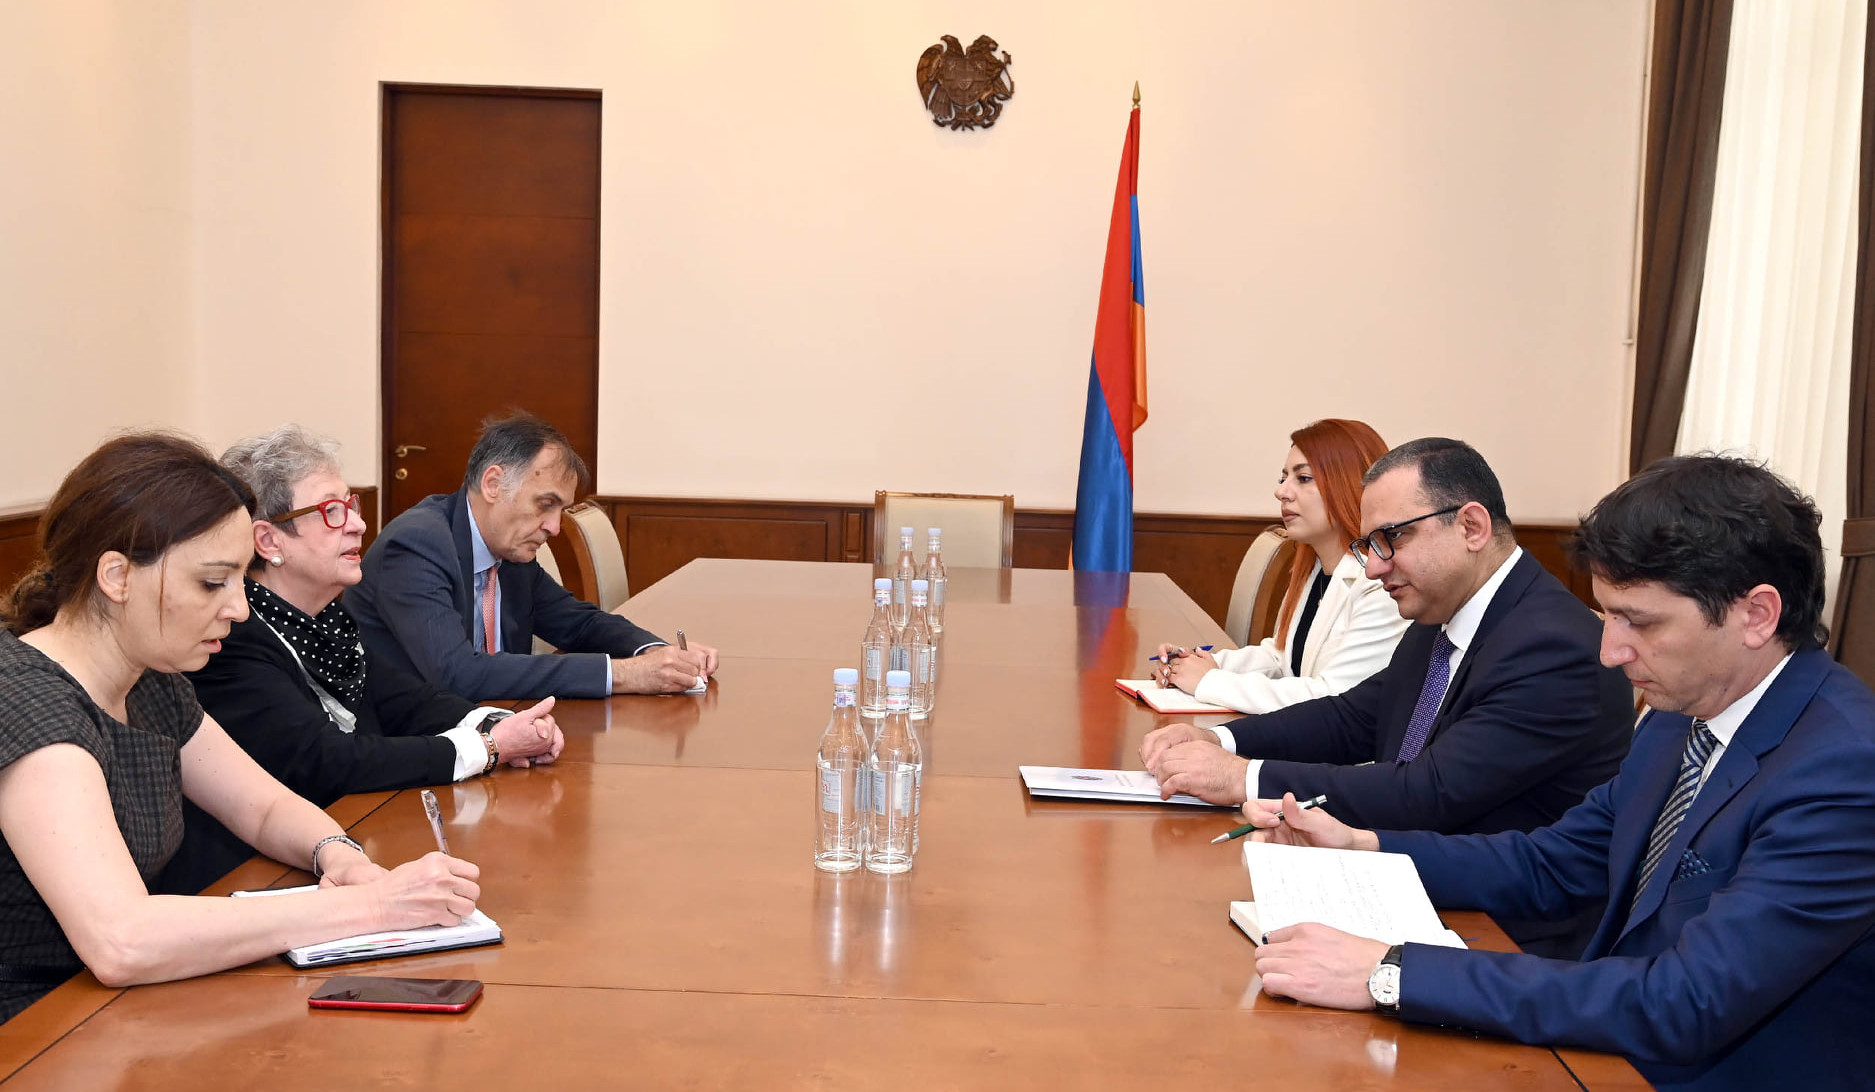 ЕС готов продолжать оказывать содействие правительству Армении: Андреа Викторин